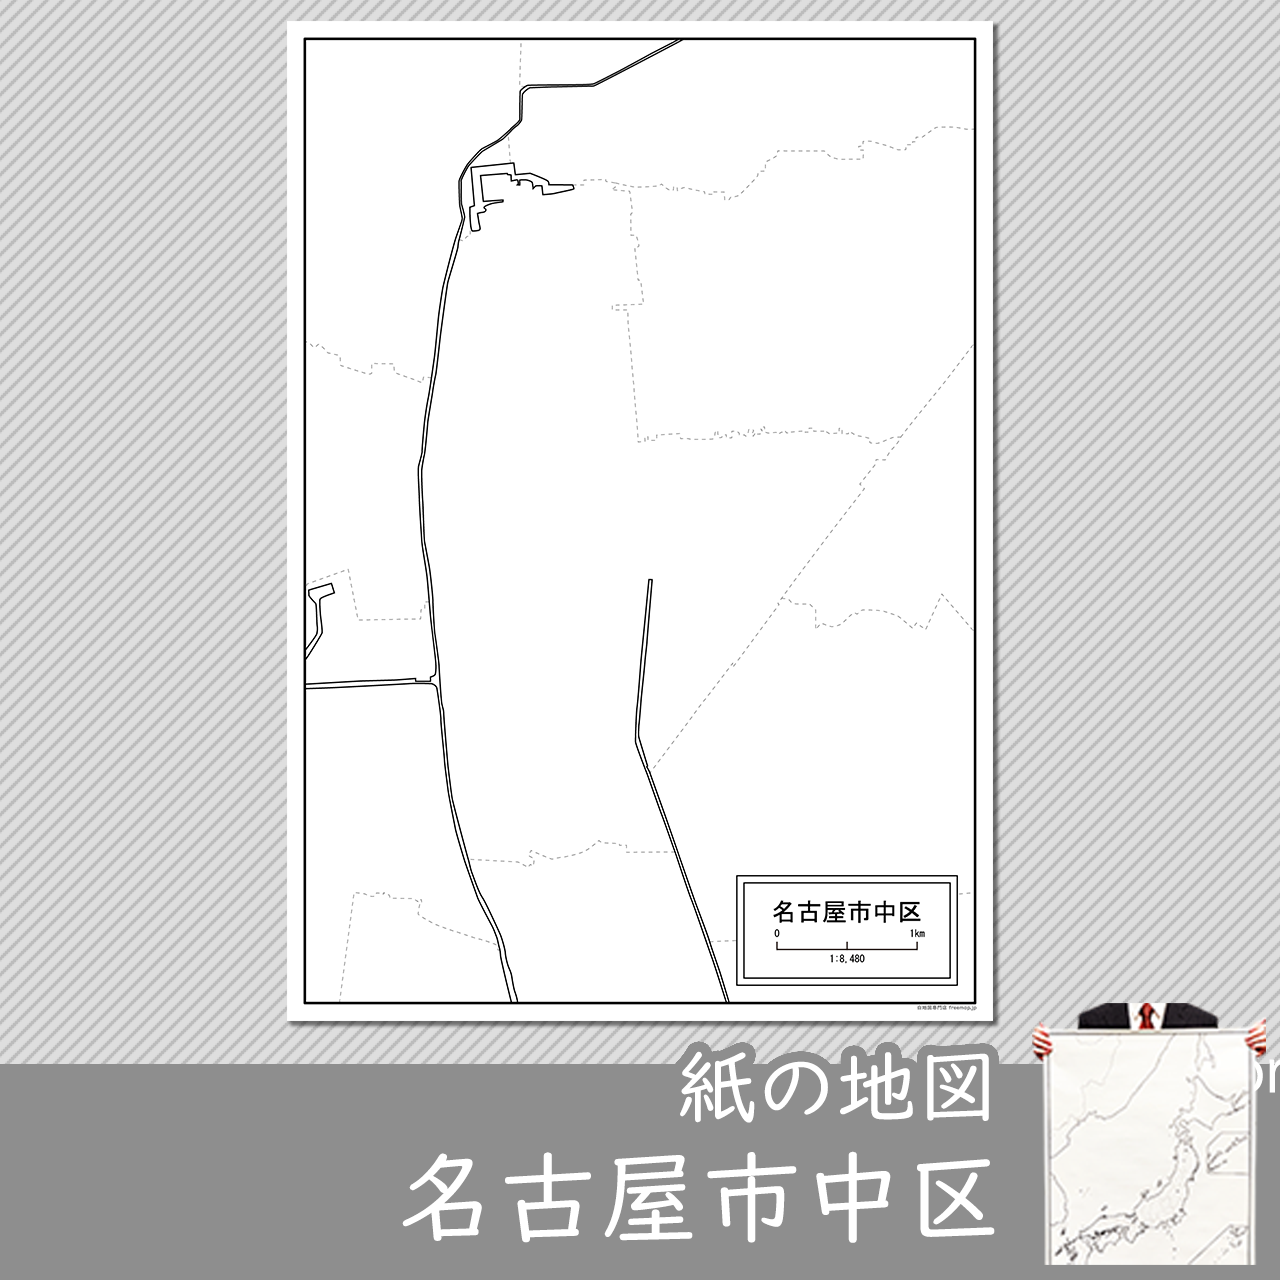 名古屋市中区の紙の白地図のサムネイル